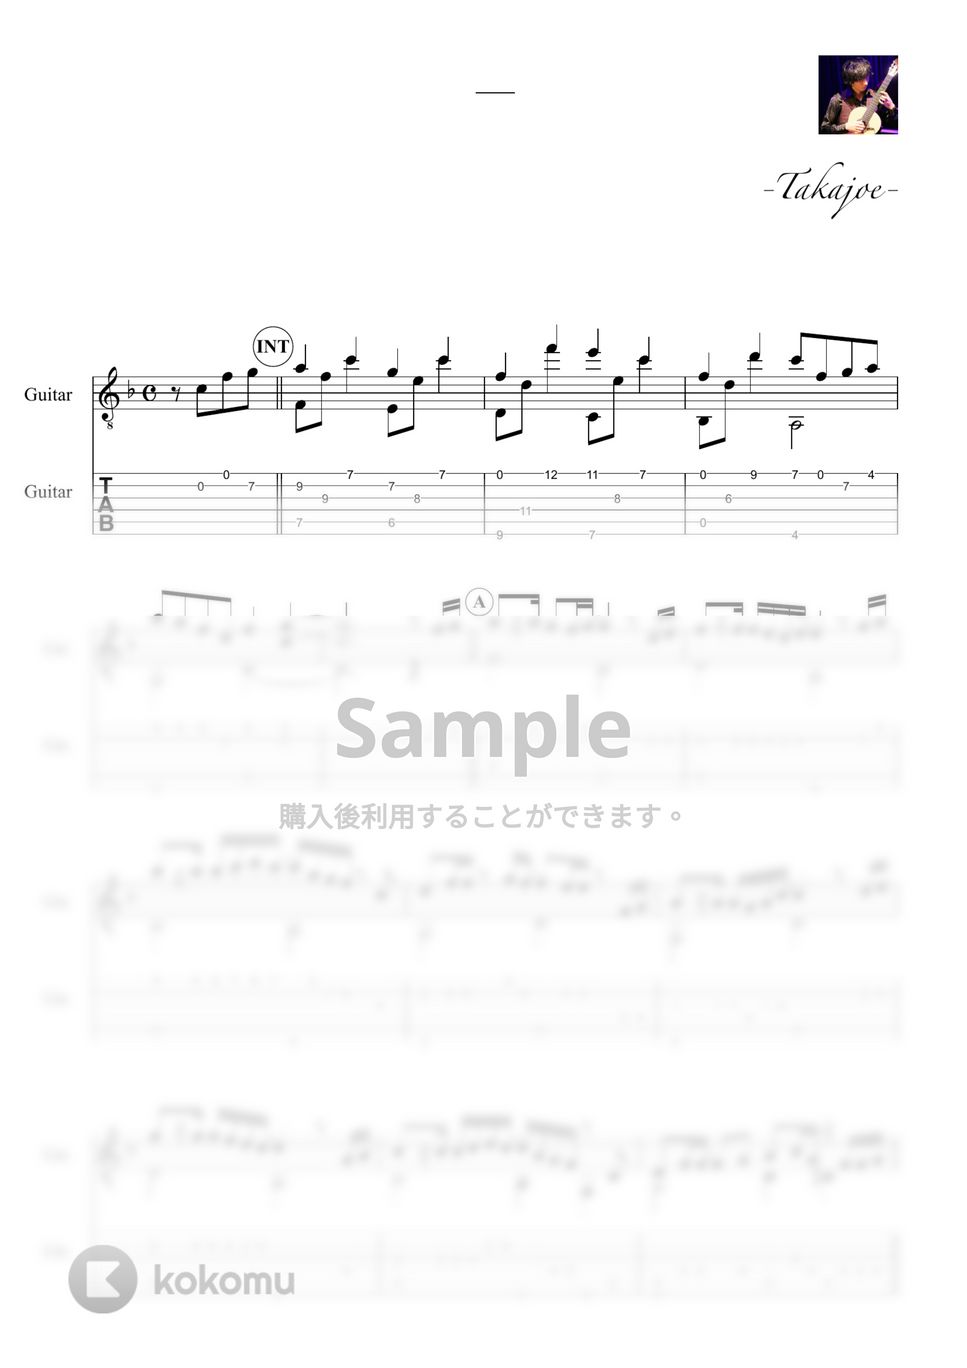 菅田将暉 - 虹 (『STAND BY ME ドラえもん 2』) by 鷹城-Takajoe-